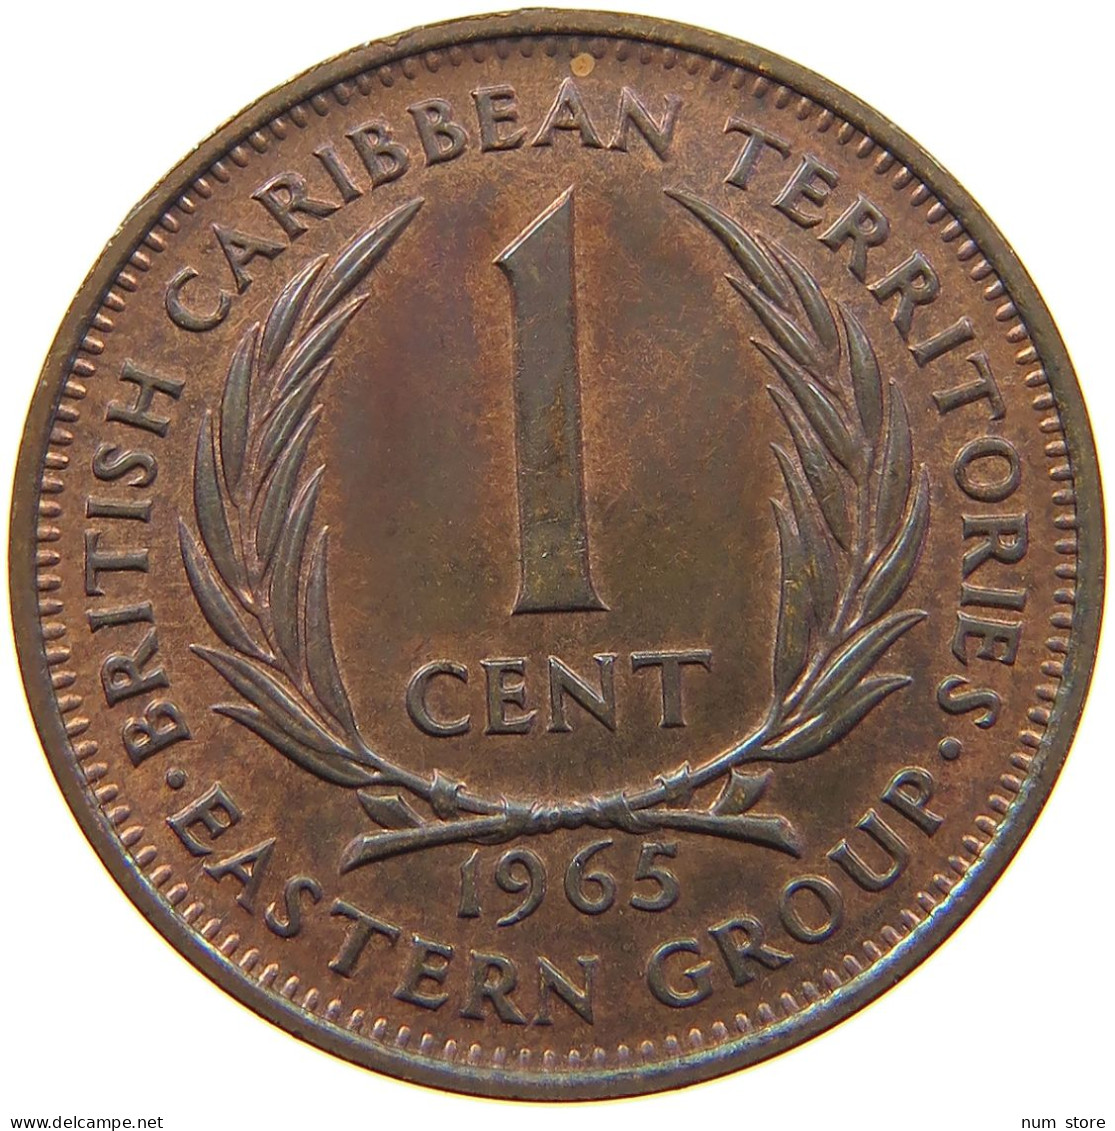 BRITISH CARIBBEAN TERRITORIES CENT 1965 ELIZABETH II. (1952-) #MA 065084 - British Caribbean Territories